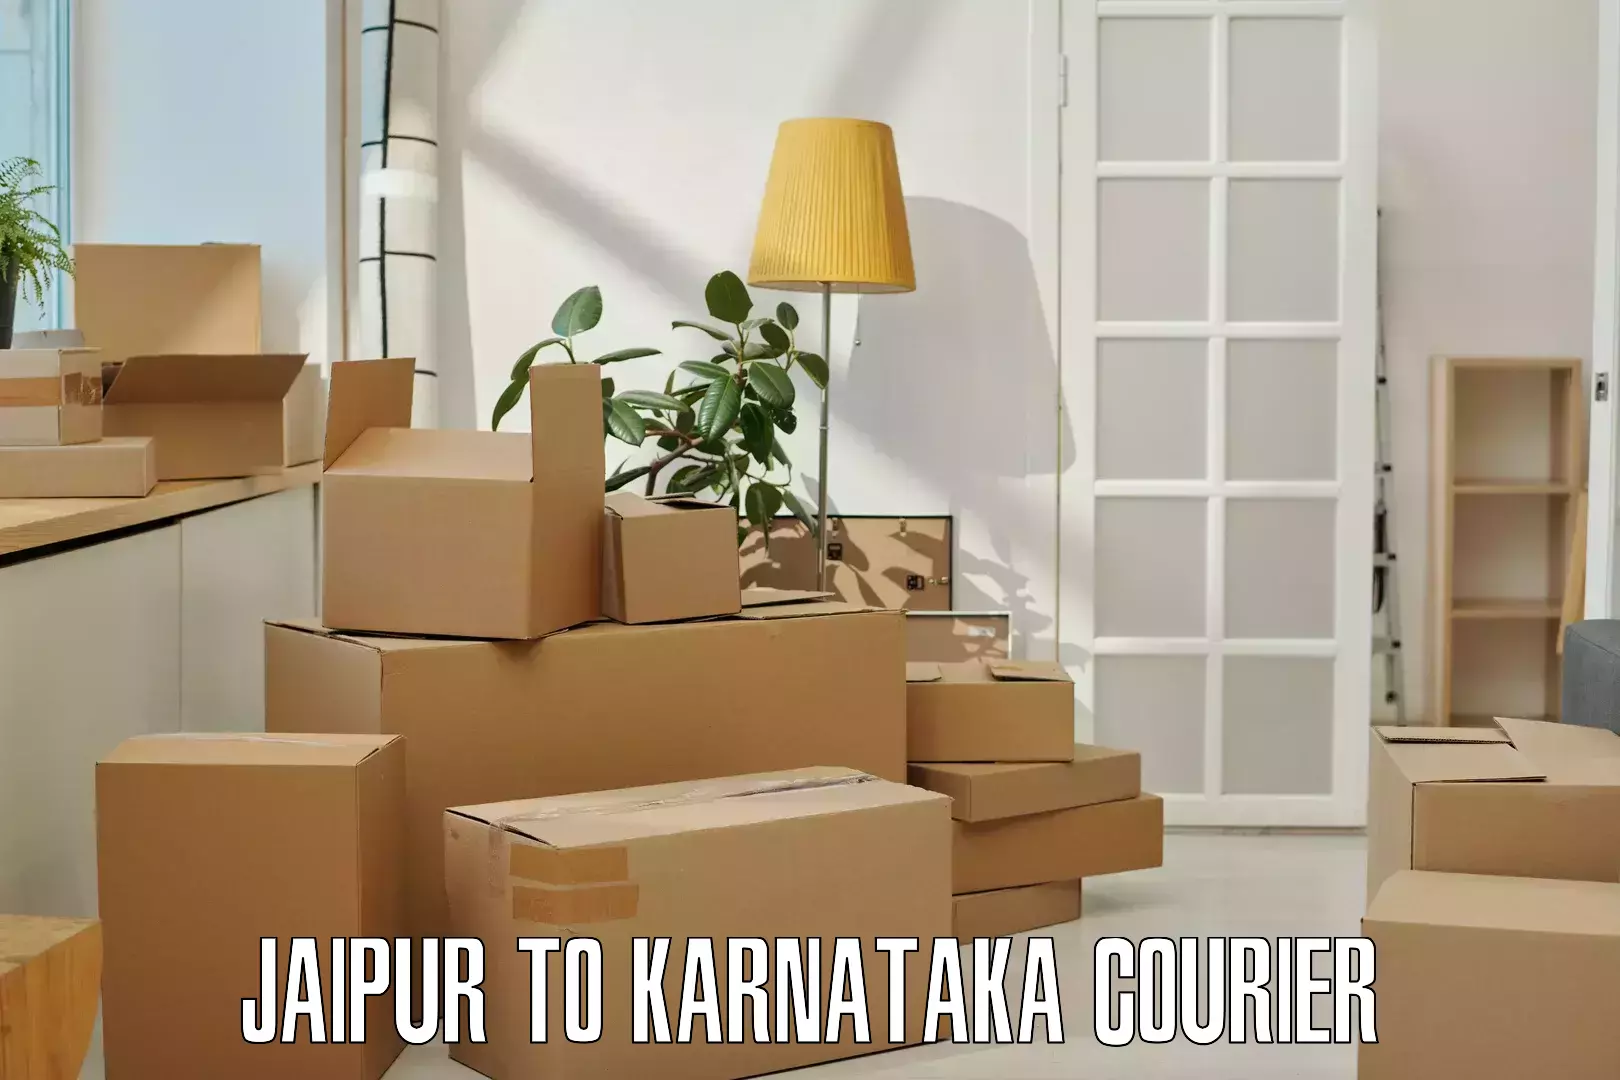 Individual parcel service Jaipur to Shanivarasanthe